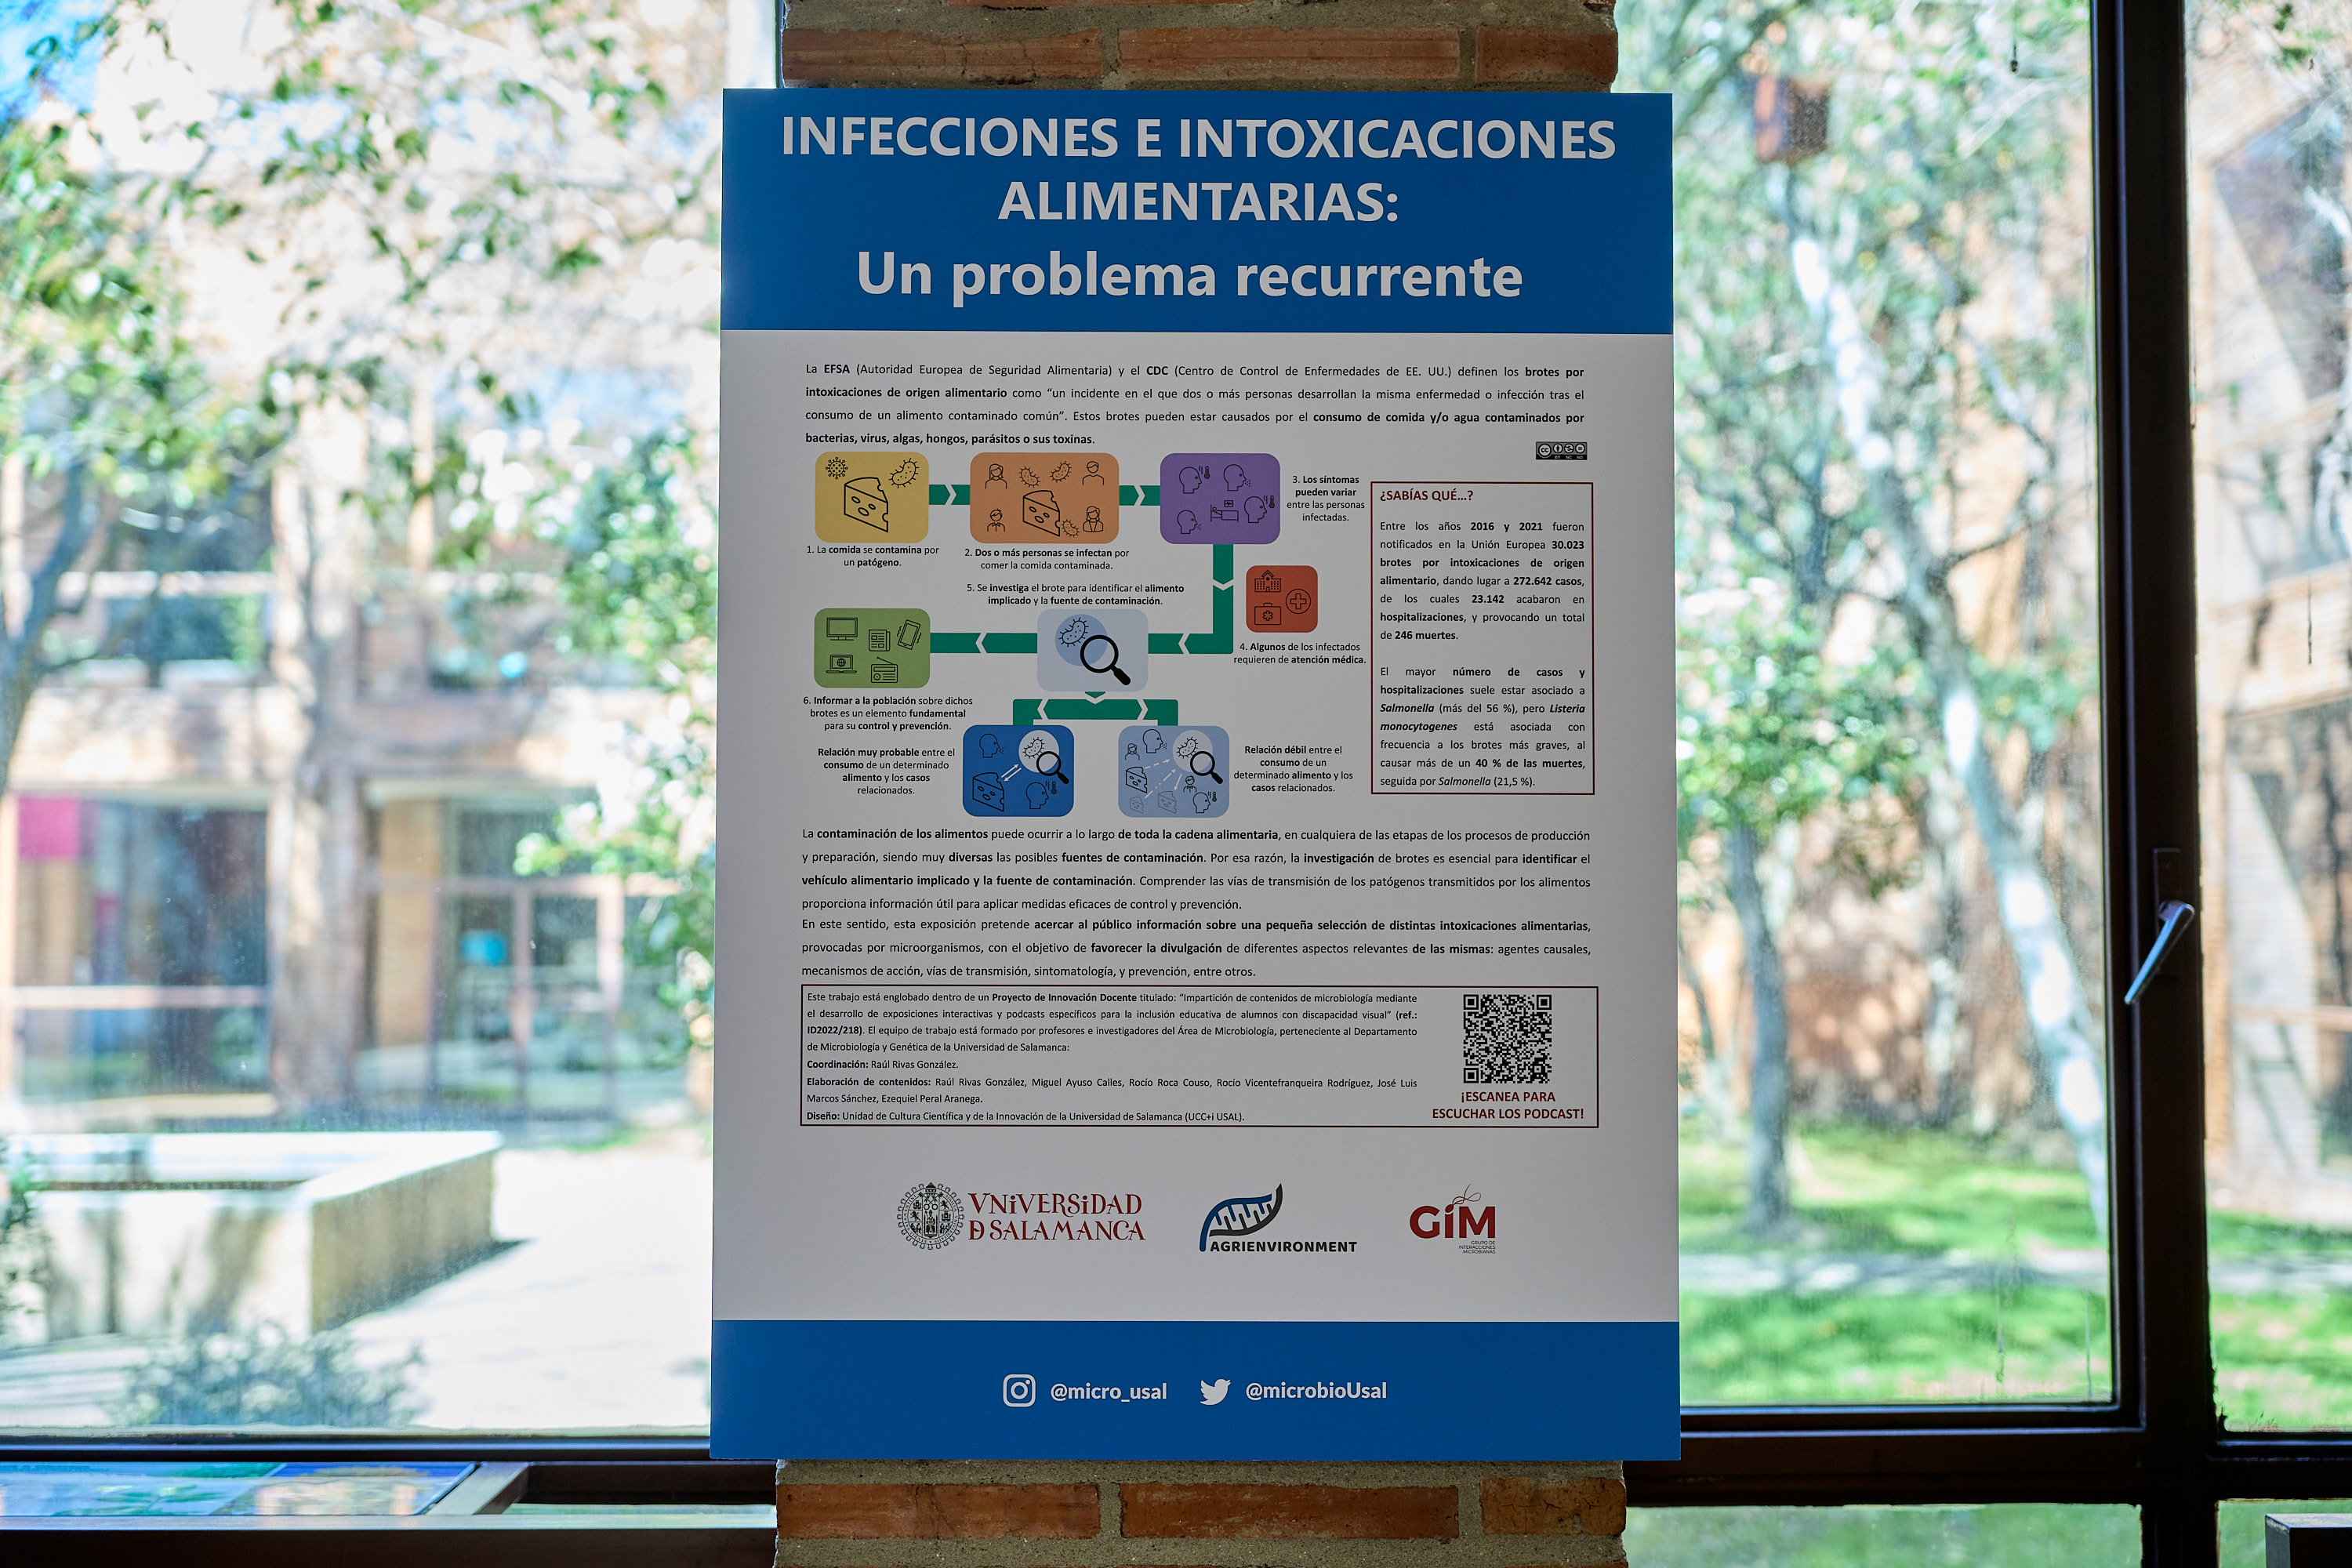 La Universidad de Salamanca revisa en una exposición las infecciones e intoxicaciones de origen alimentario más frecuentes y sus patógenos